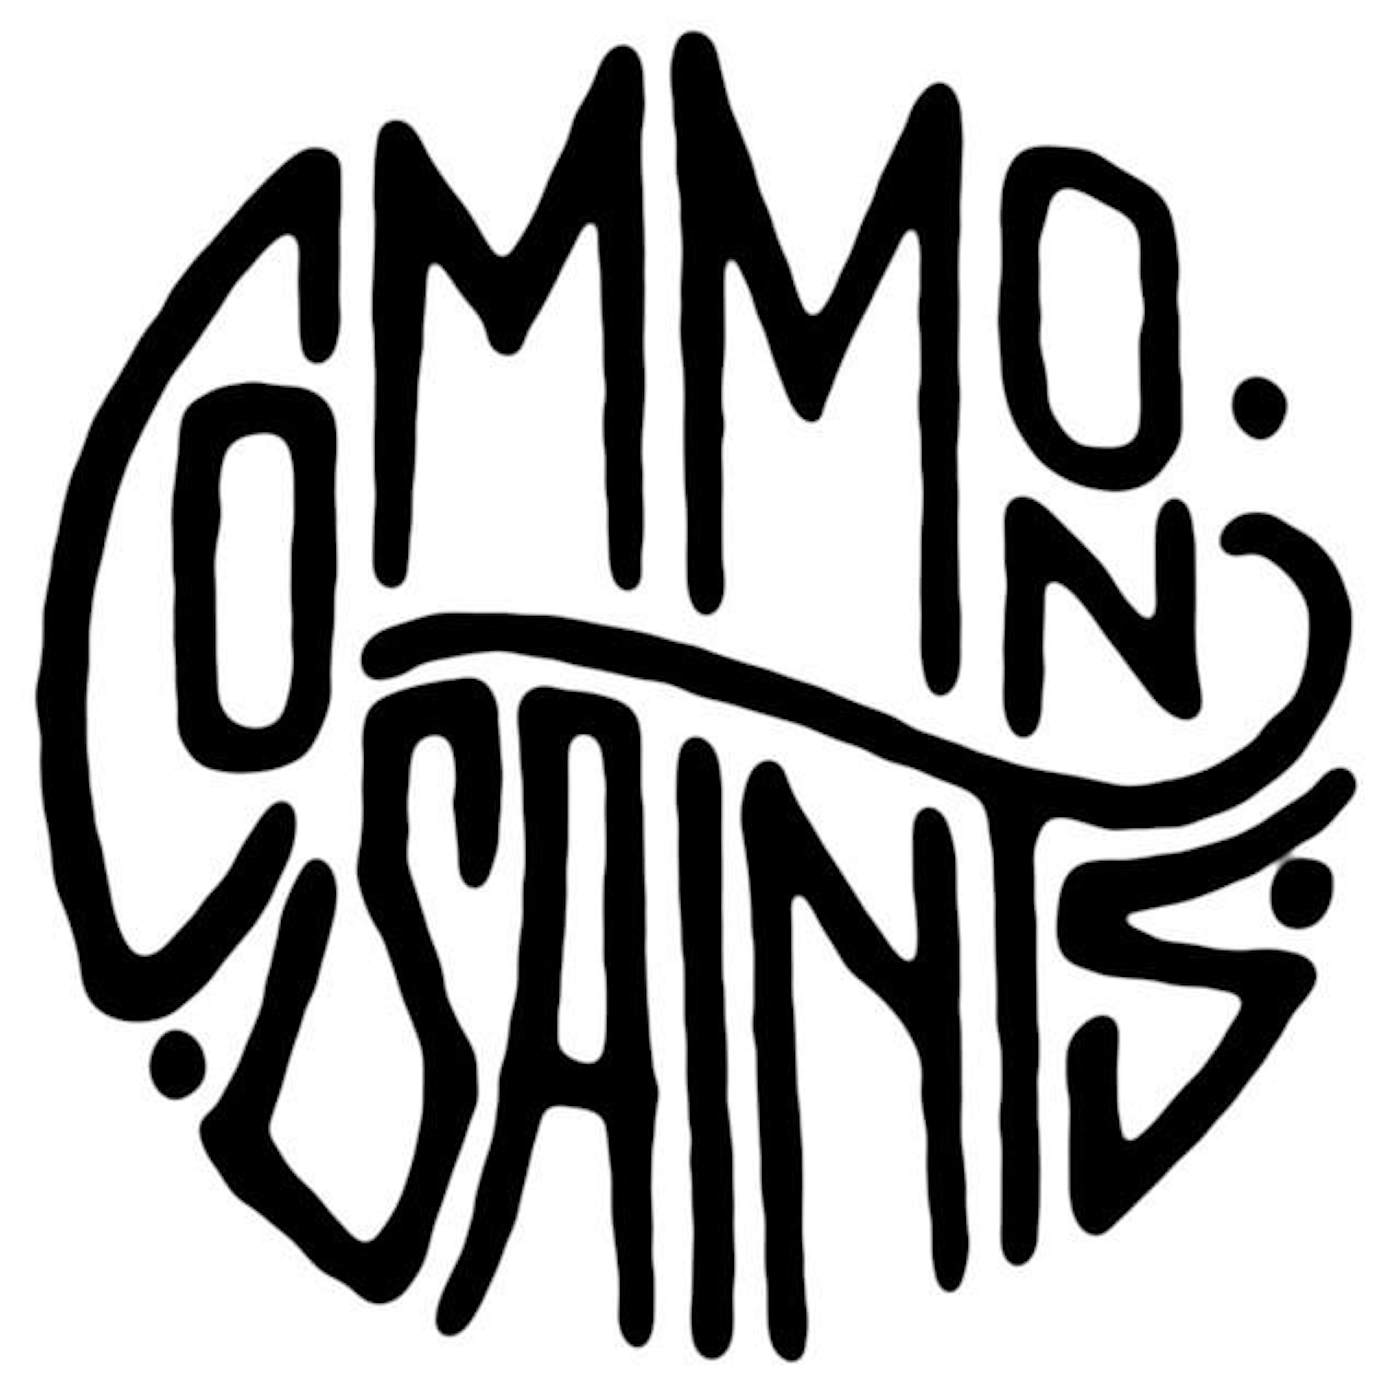 Common Saints